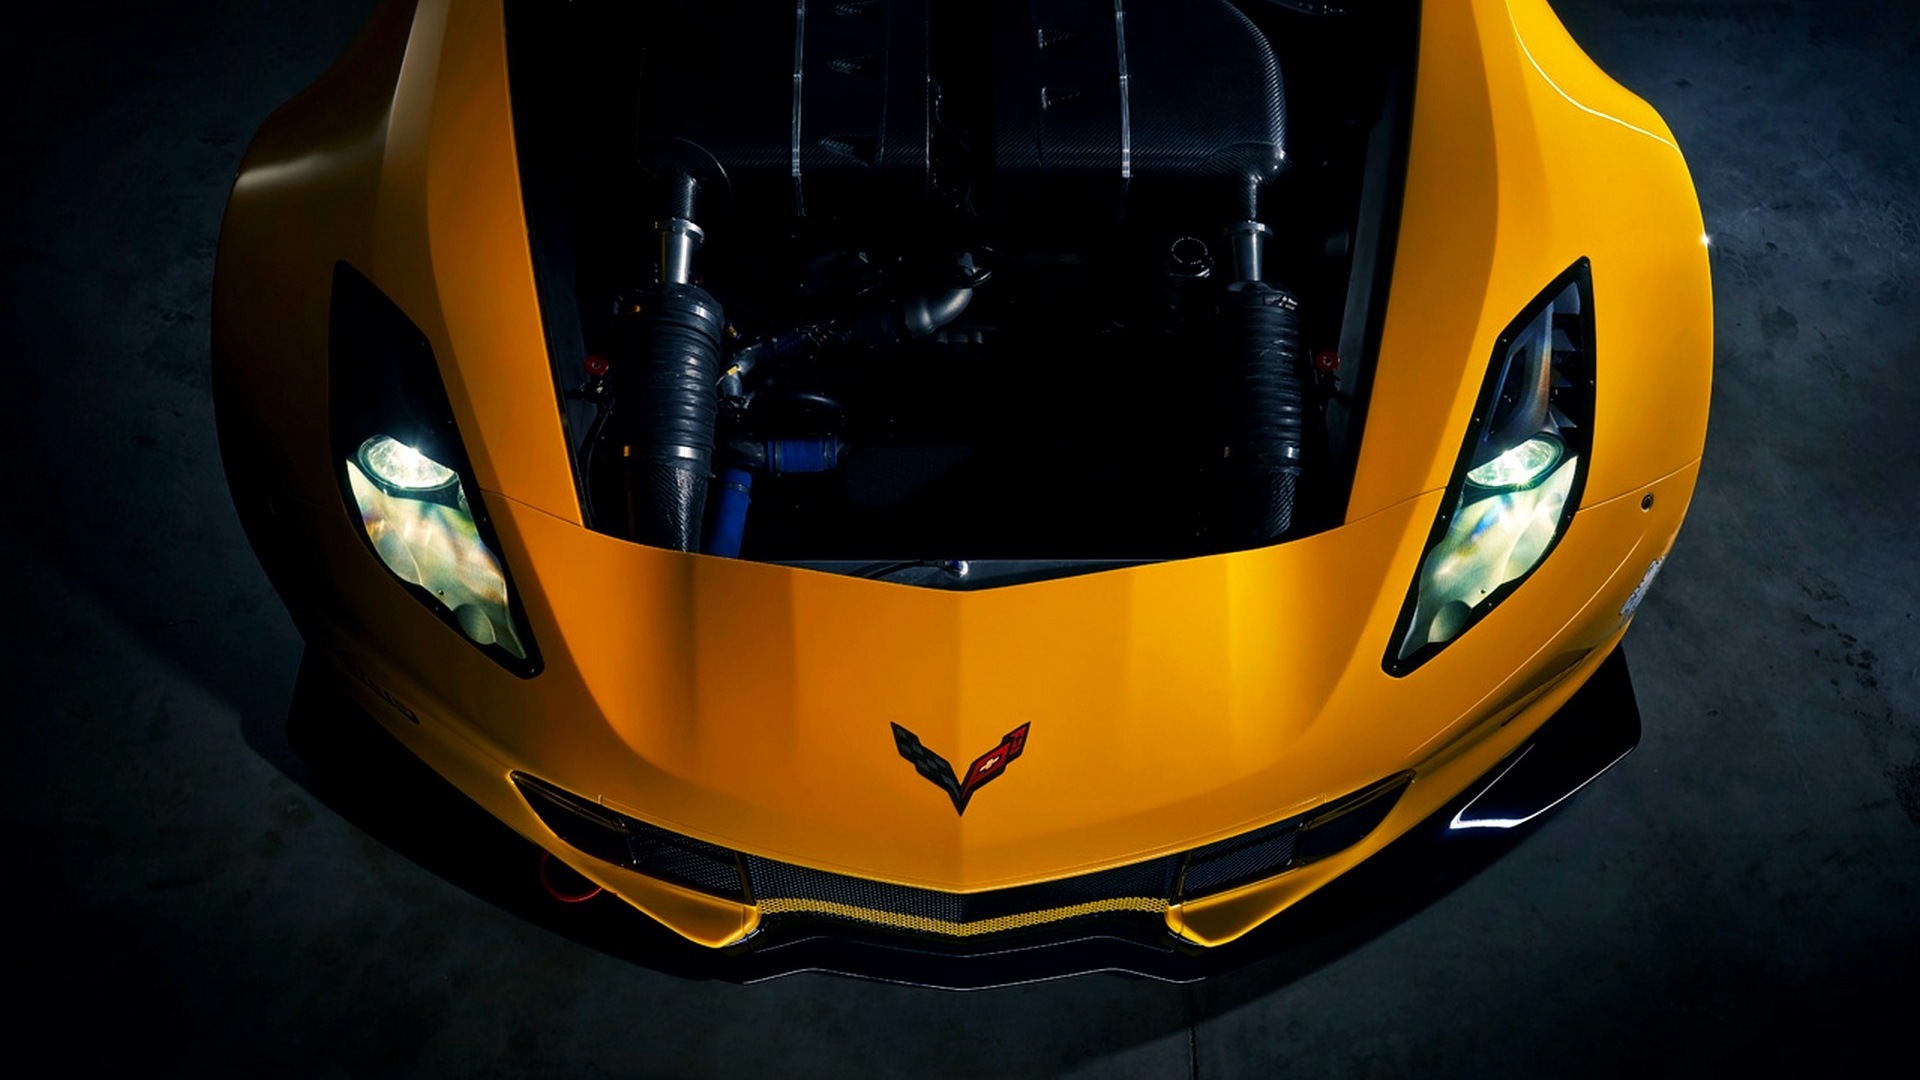 2015年雪佛蘭 Corvette Z06跑車高清壁紙 #2 - 1920x1080